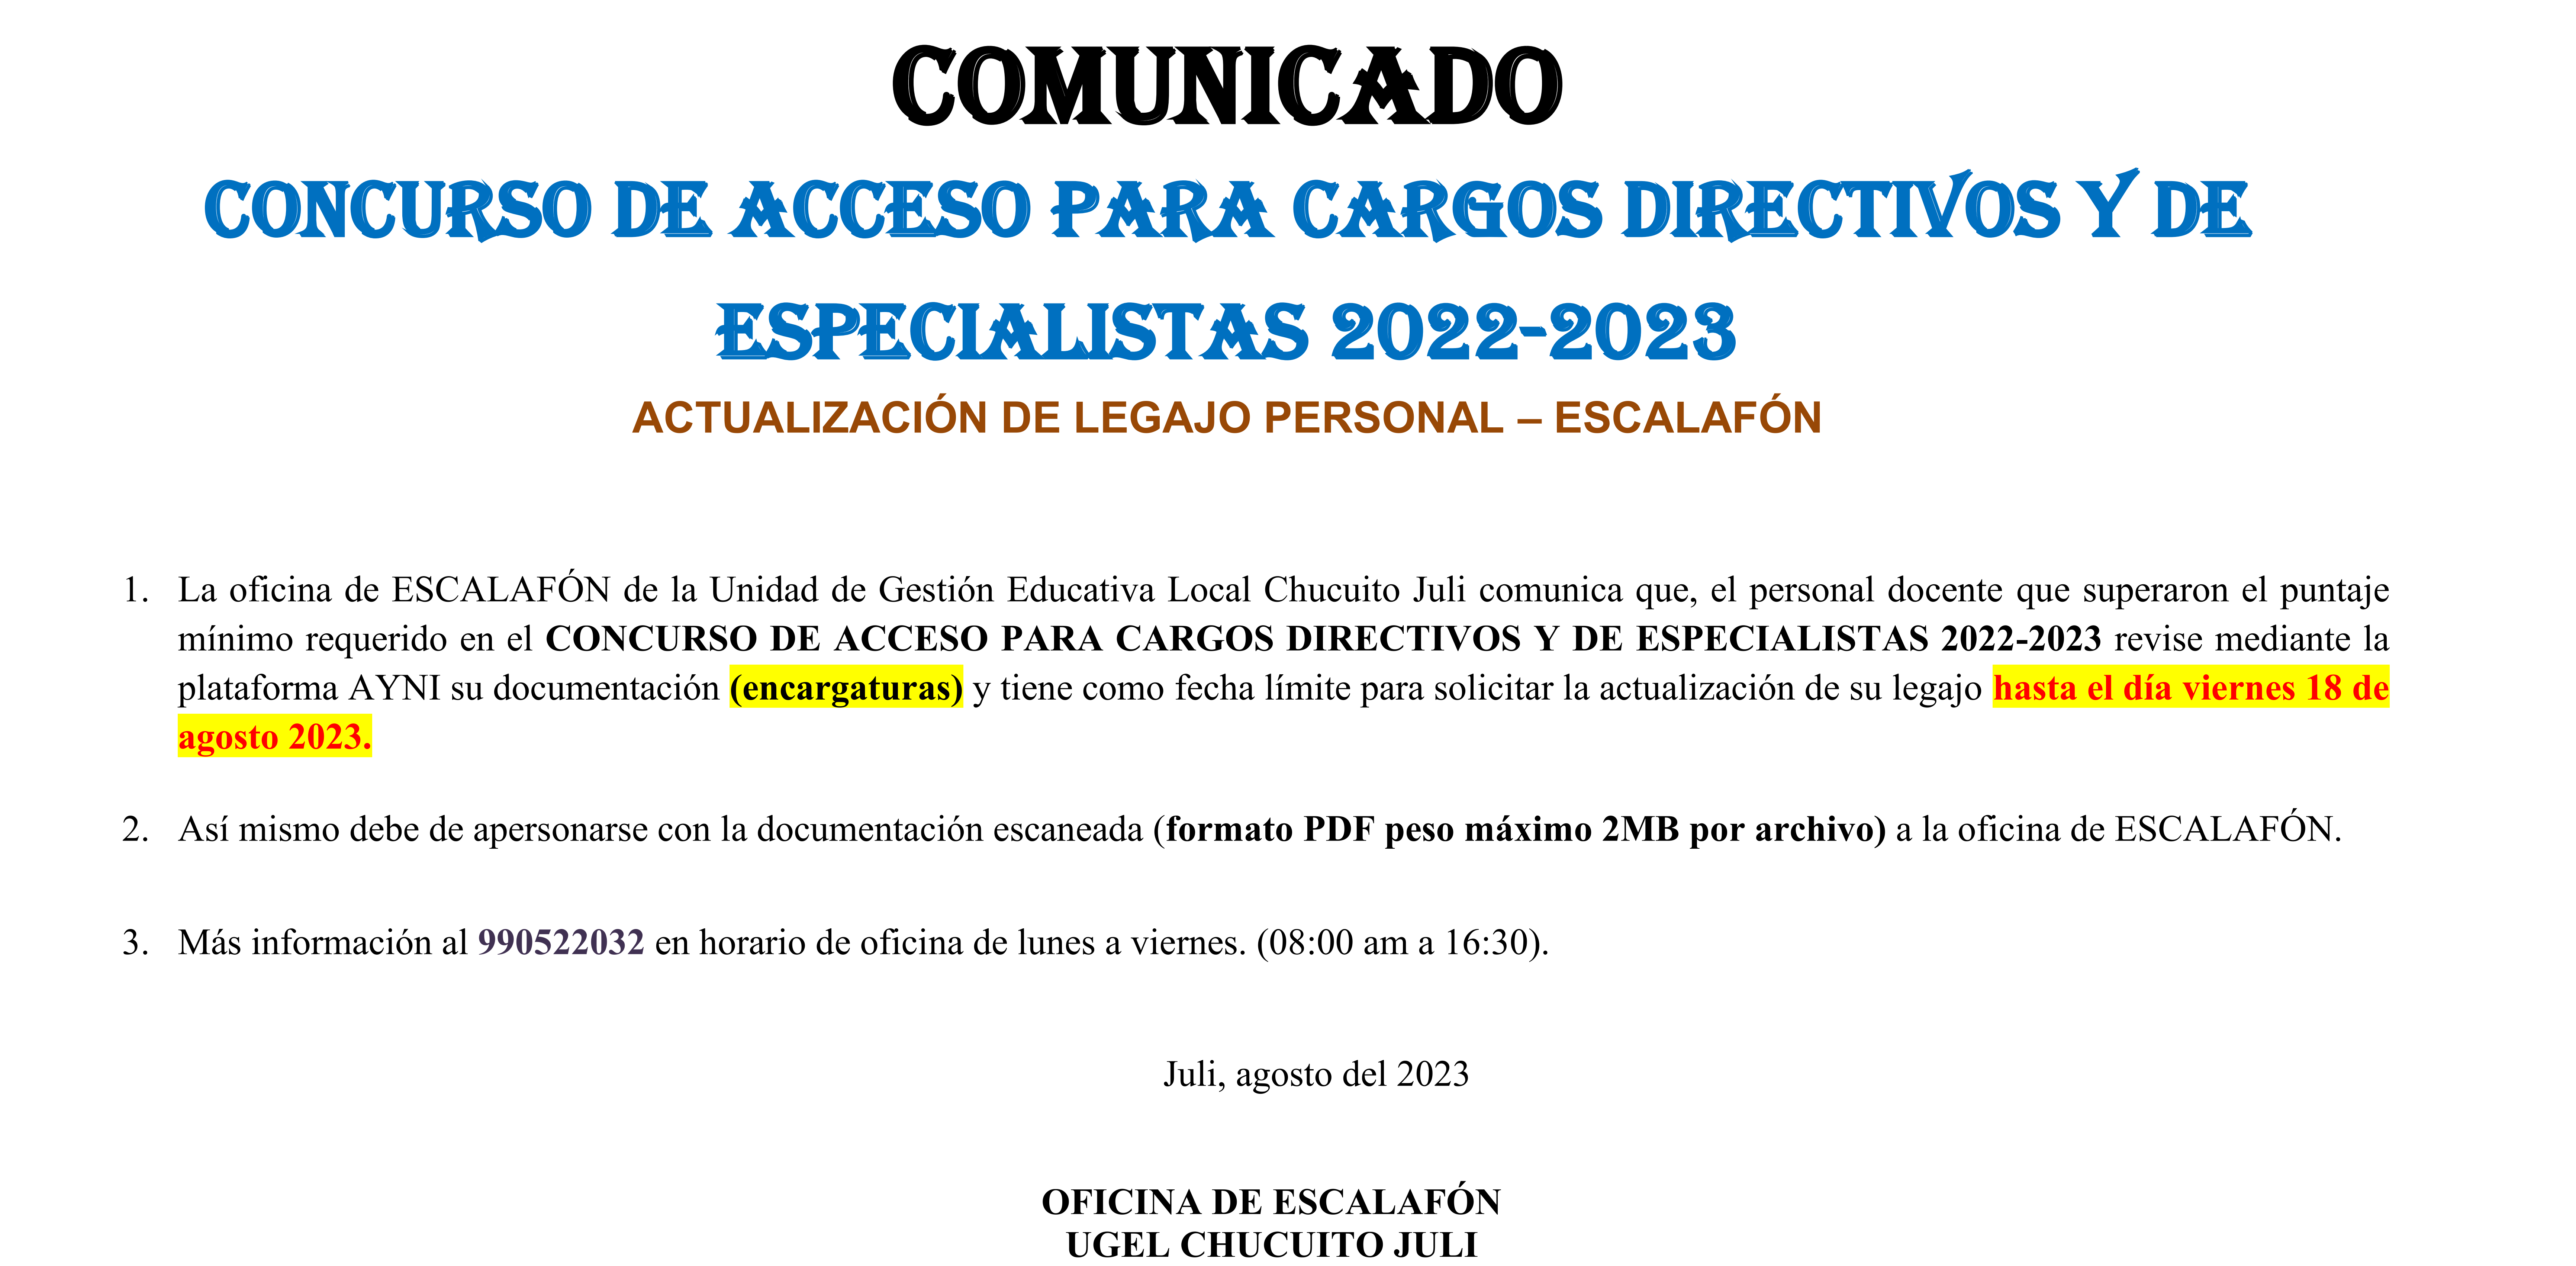 COMUNICADO: CONCURSO DE ACCESO PARA CARGOS DIRECTIVOS Y DE ESPECIALISTAS 2022-2023. ACTUALIZACIÓN DE LEGAJO PERSONAL – ESCALAFÓN